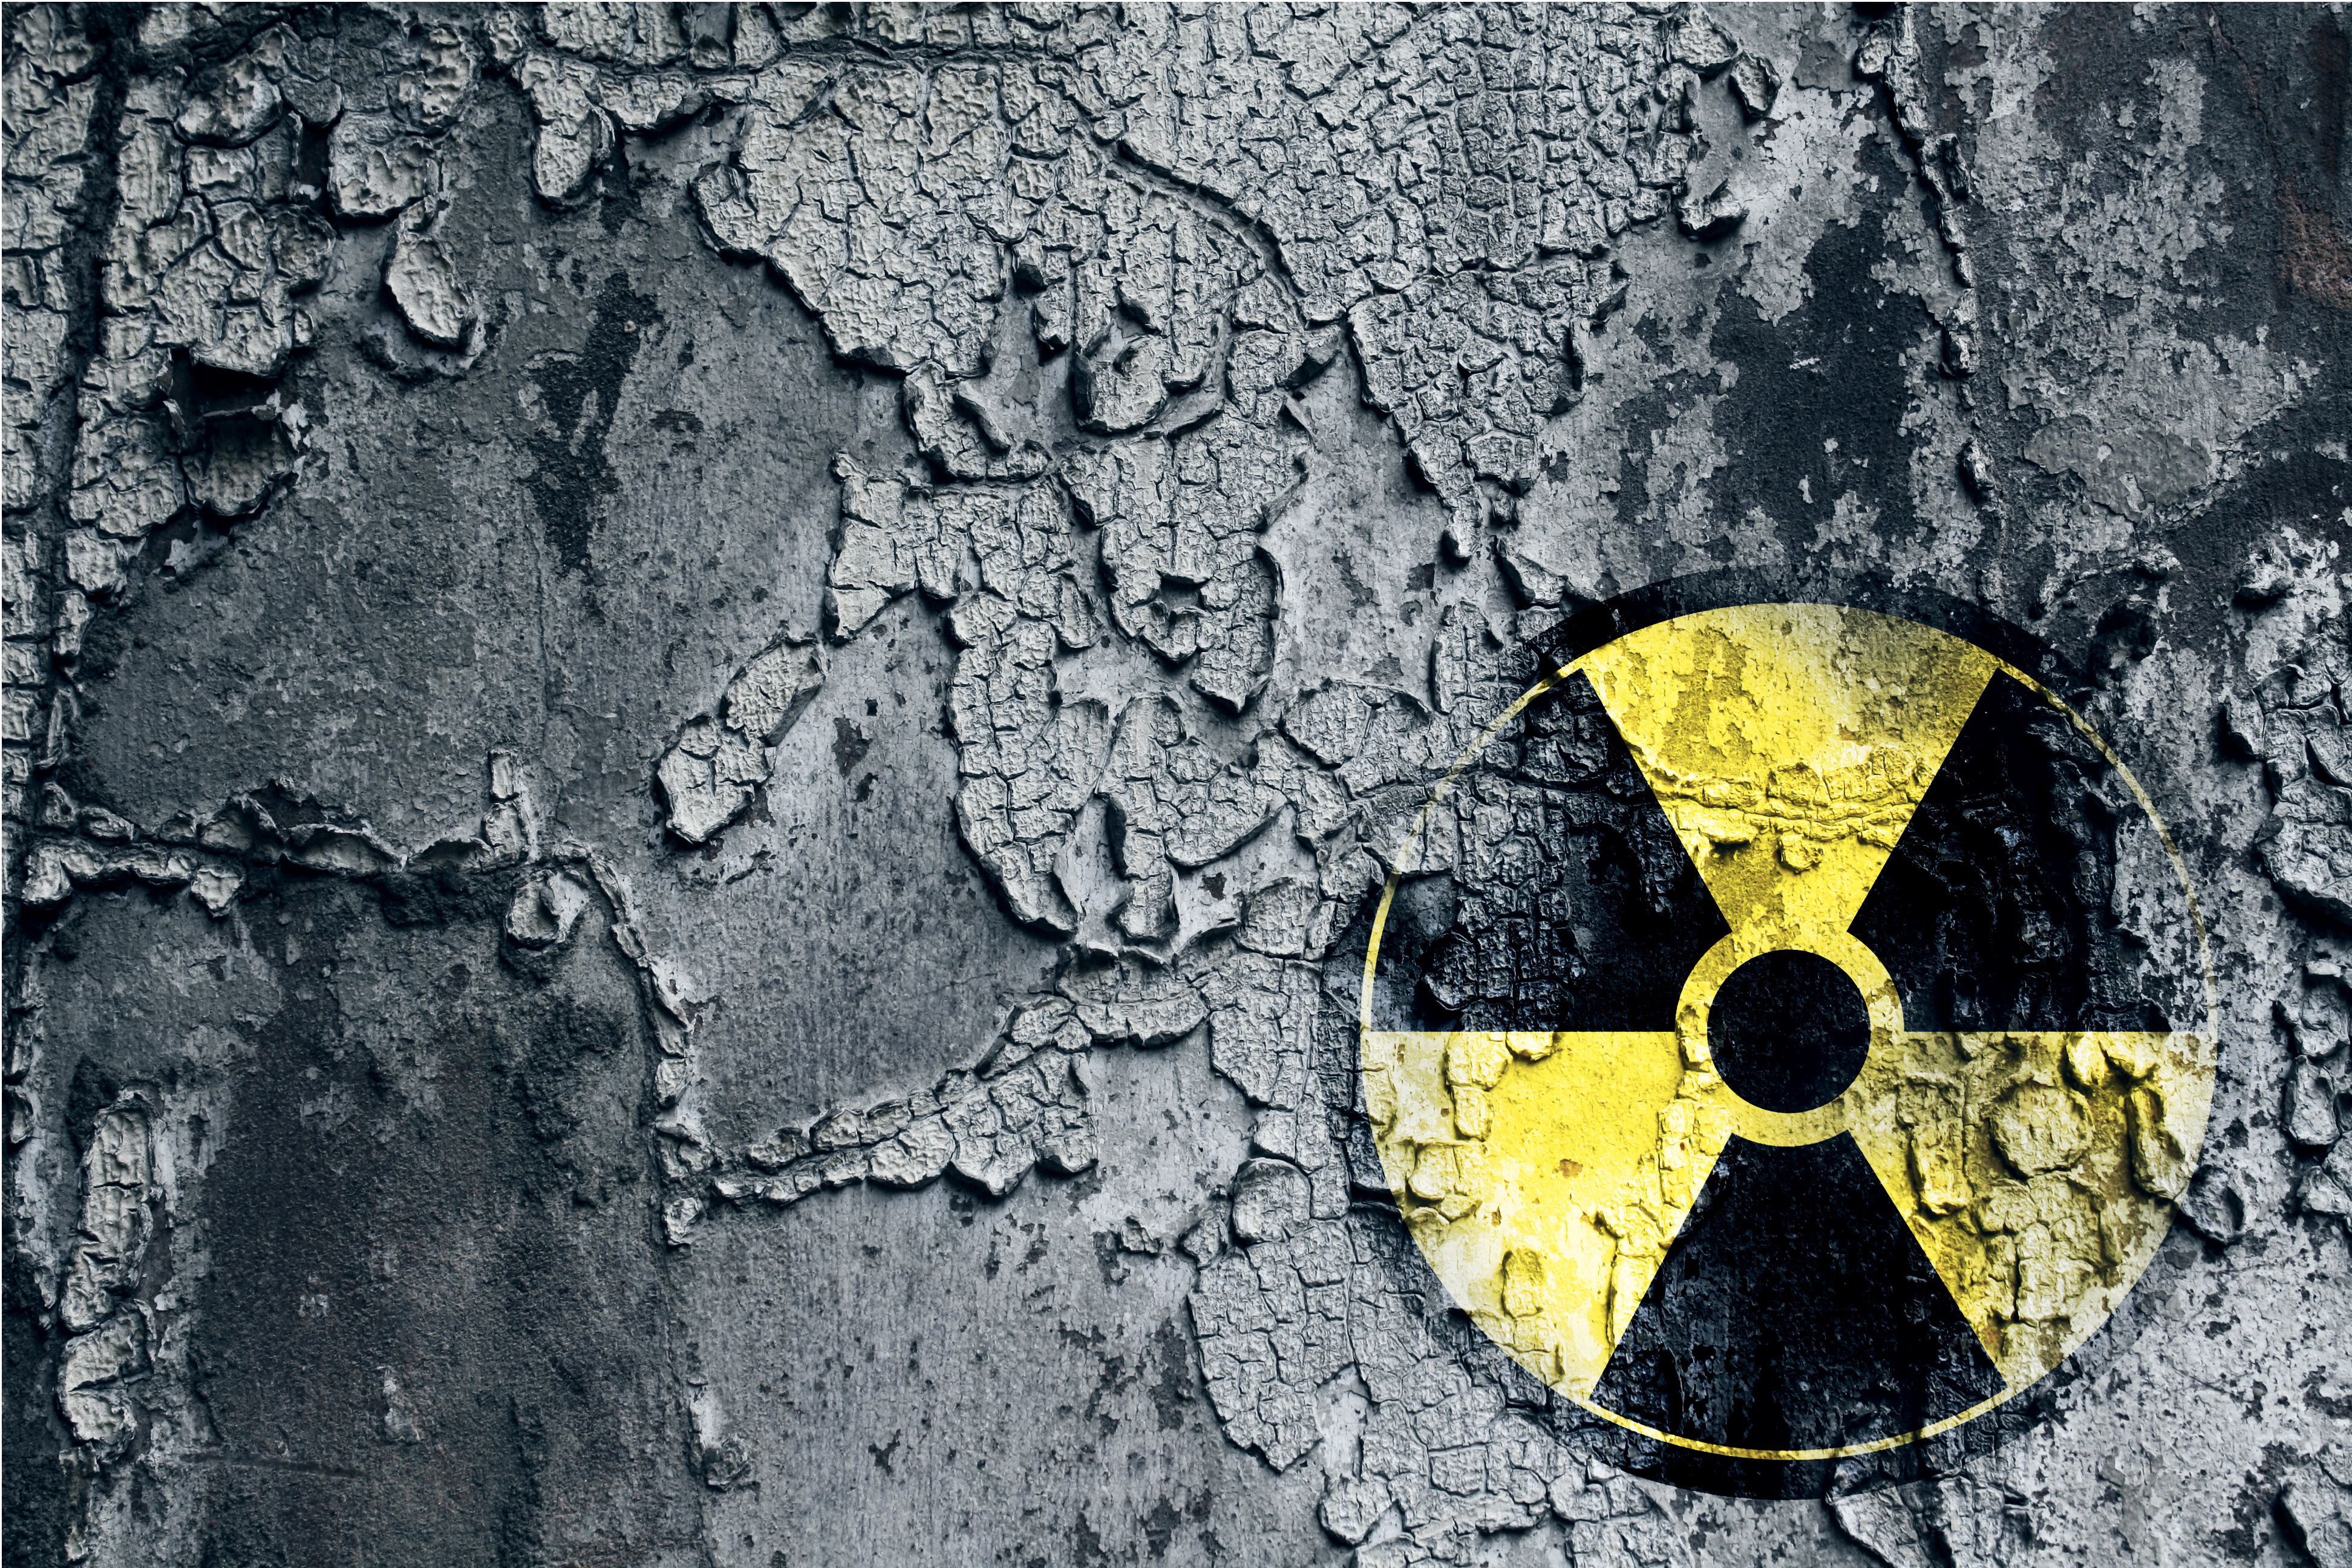 Радиоактивный и радиационный